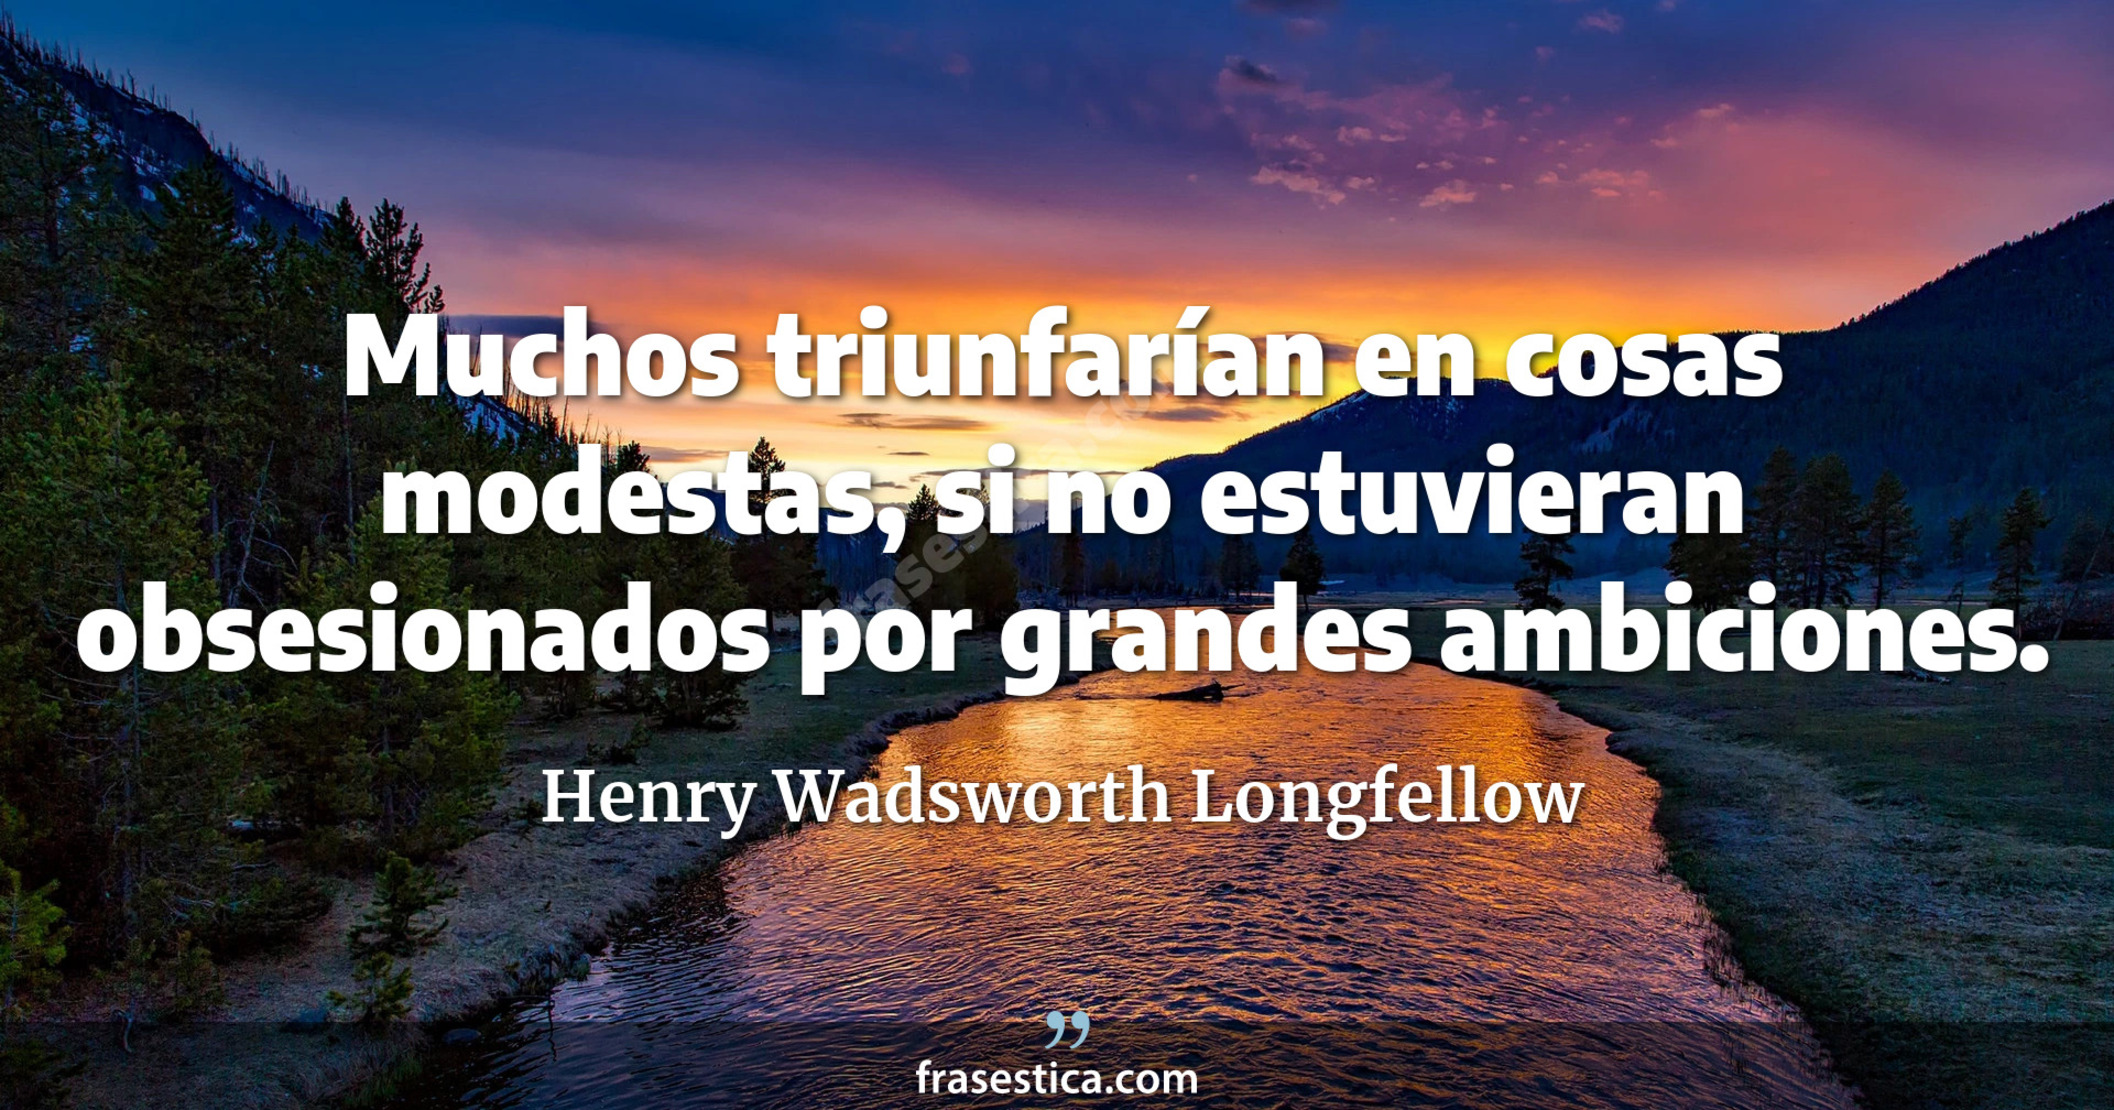 Muchos triunfarían en cosas modestas, si no estuvieran obsesionados por grandes ambiciones. - Henry Wadsworth Longfellow